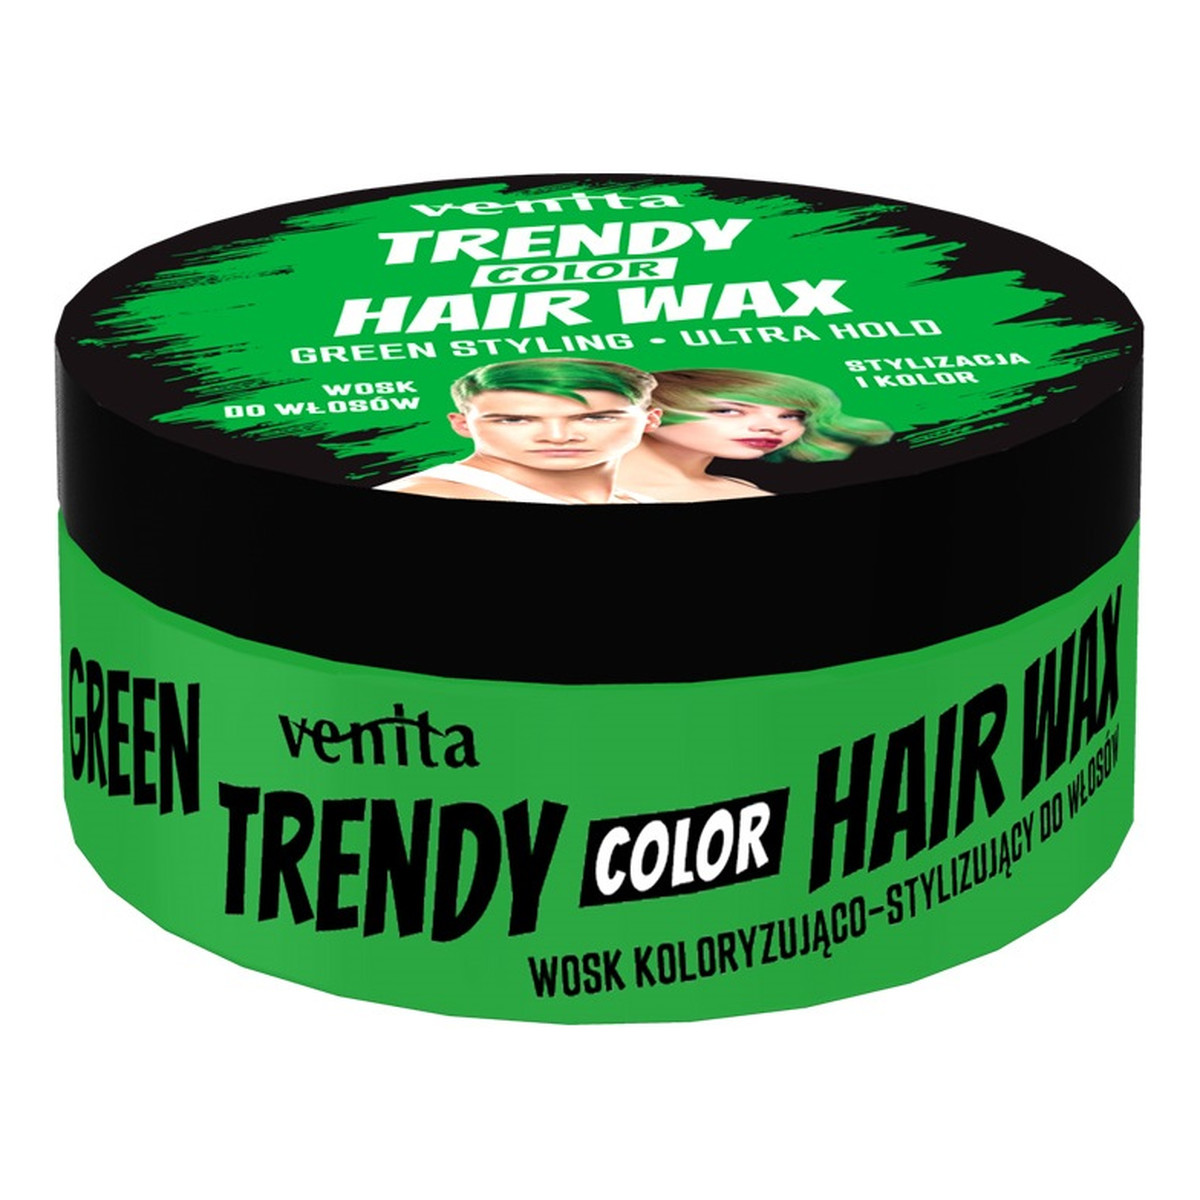 Venita Trendy color hair wax koloryzujący wosk do stylizacji włosów 75g